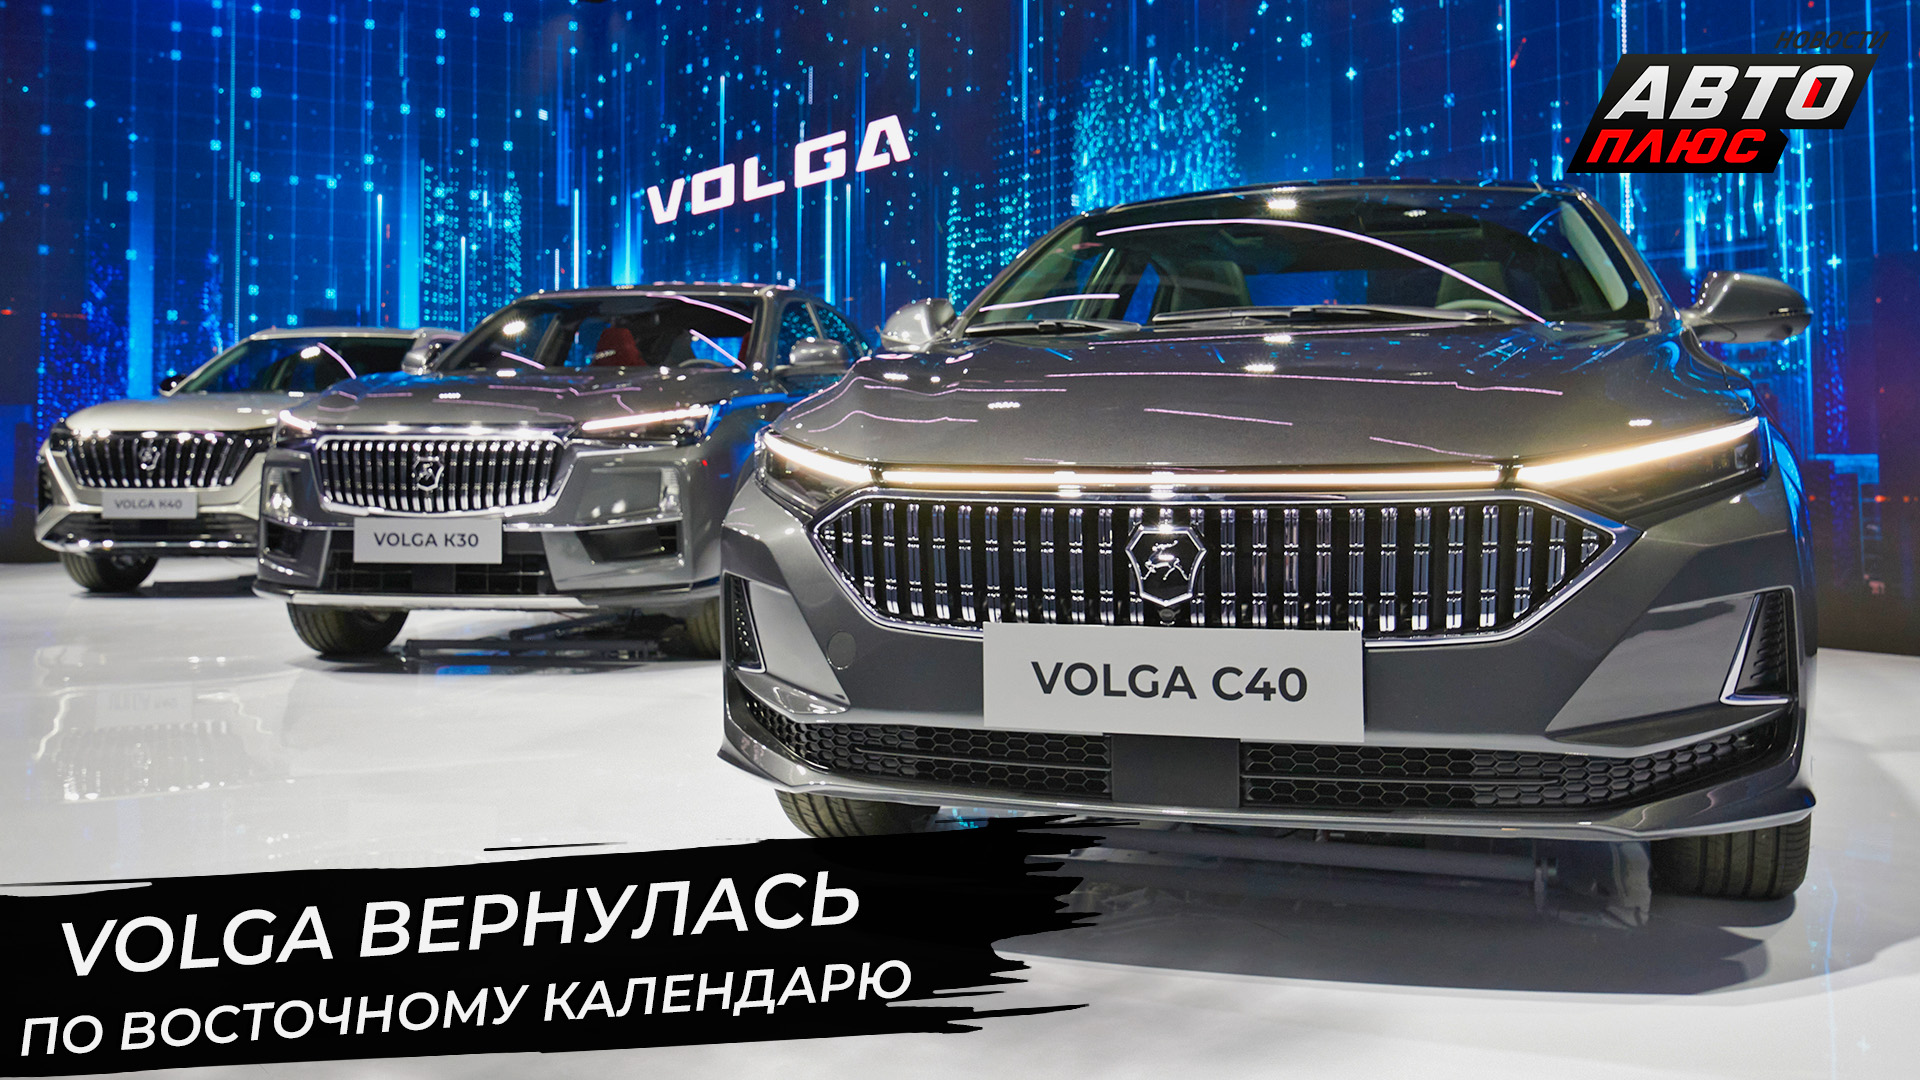 Volga вернулась по восточному календарю 